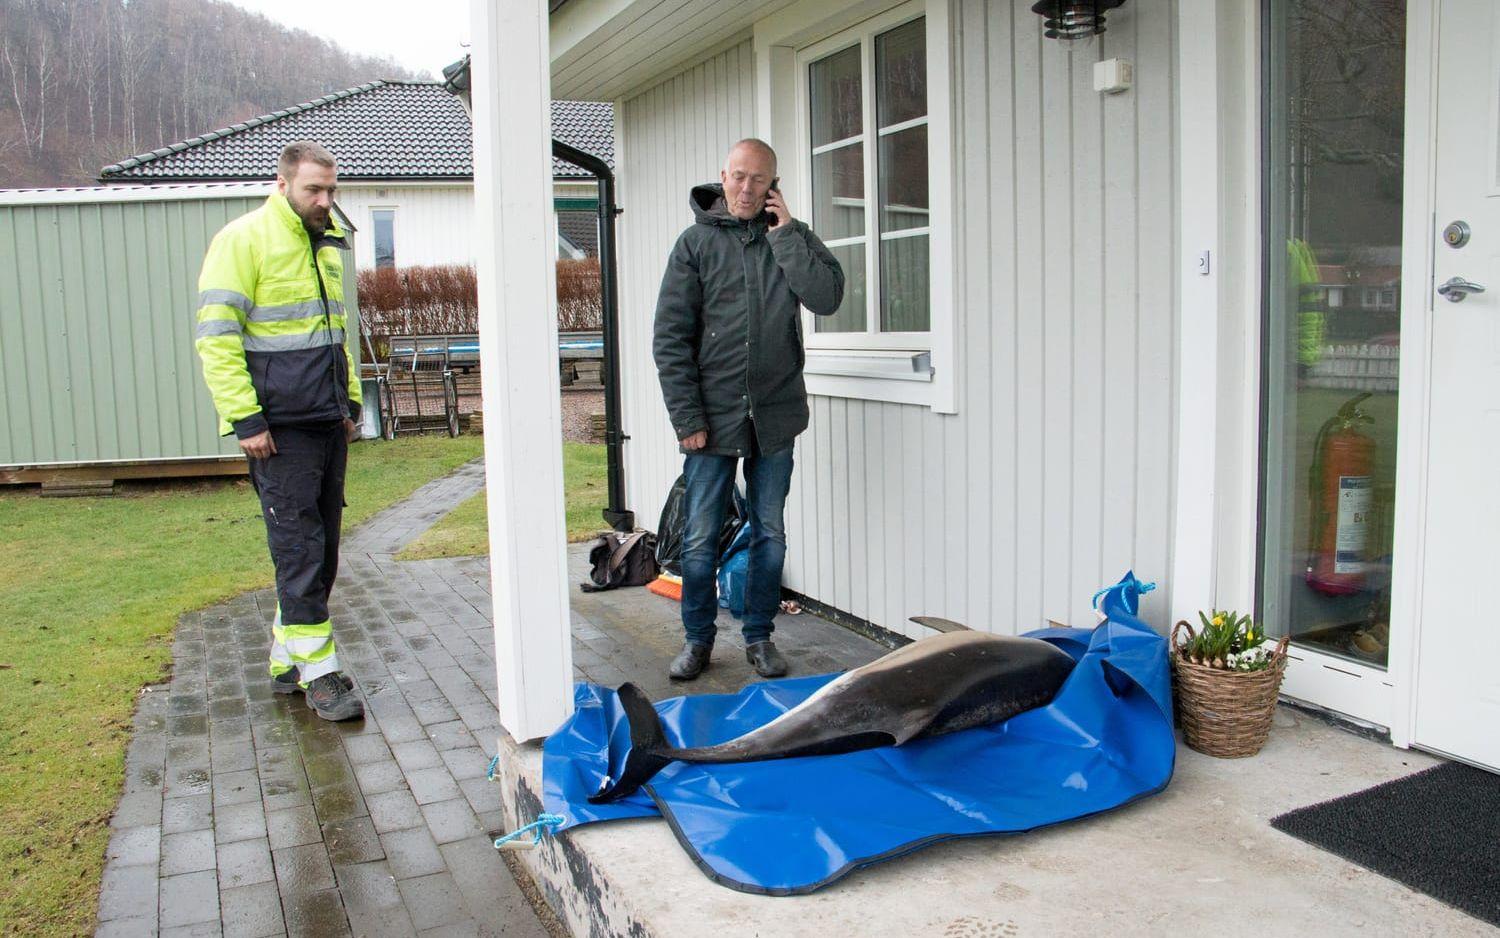 Naturhistoriska riksmuseet skickade en budfirma för att hämta djuret. Bertil Gustavsson fick många samtal om delfinen under tisdagen.